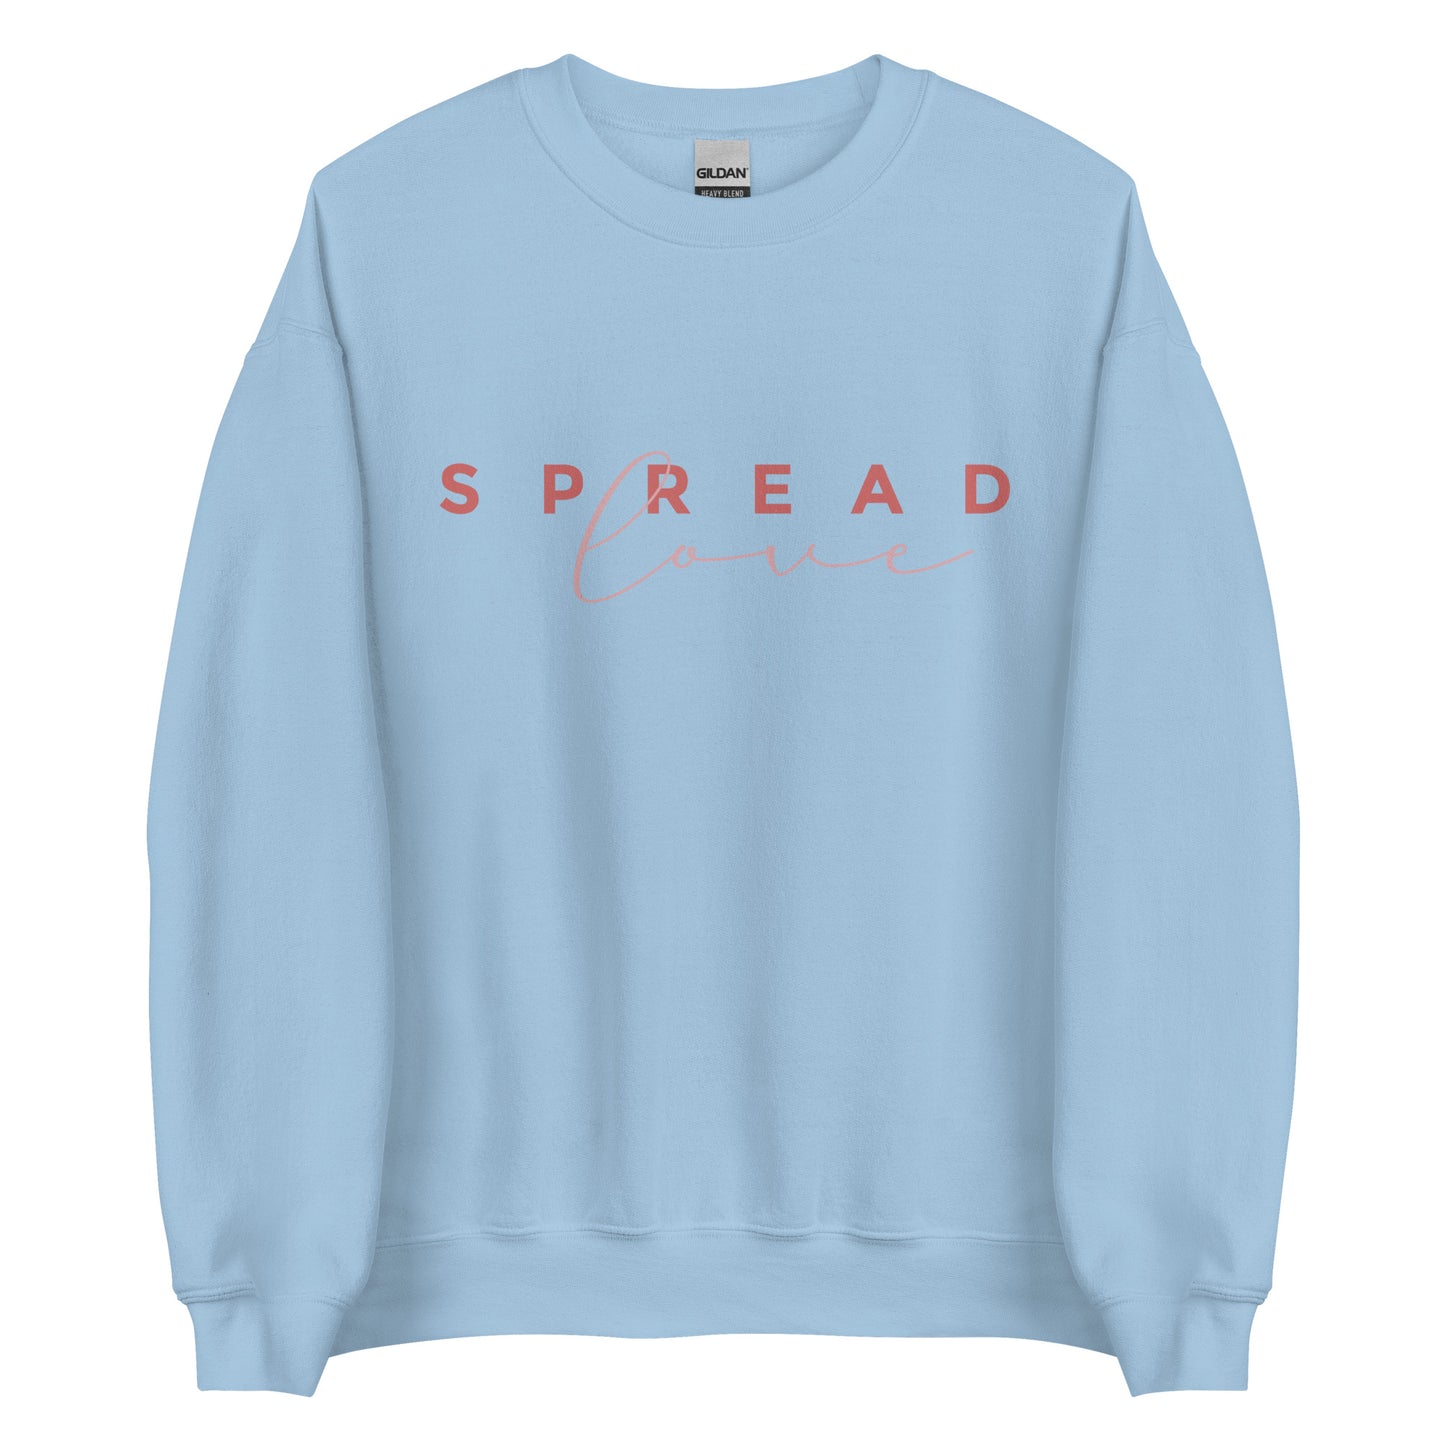 Spread Love - Men's Sweatshirt